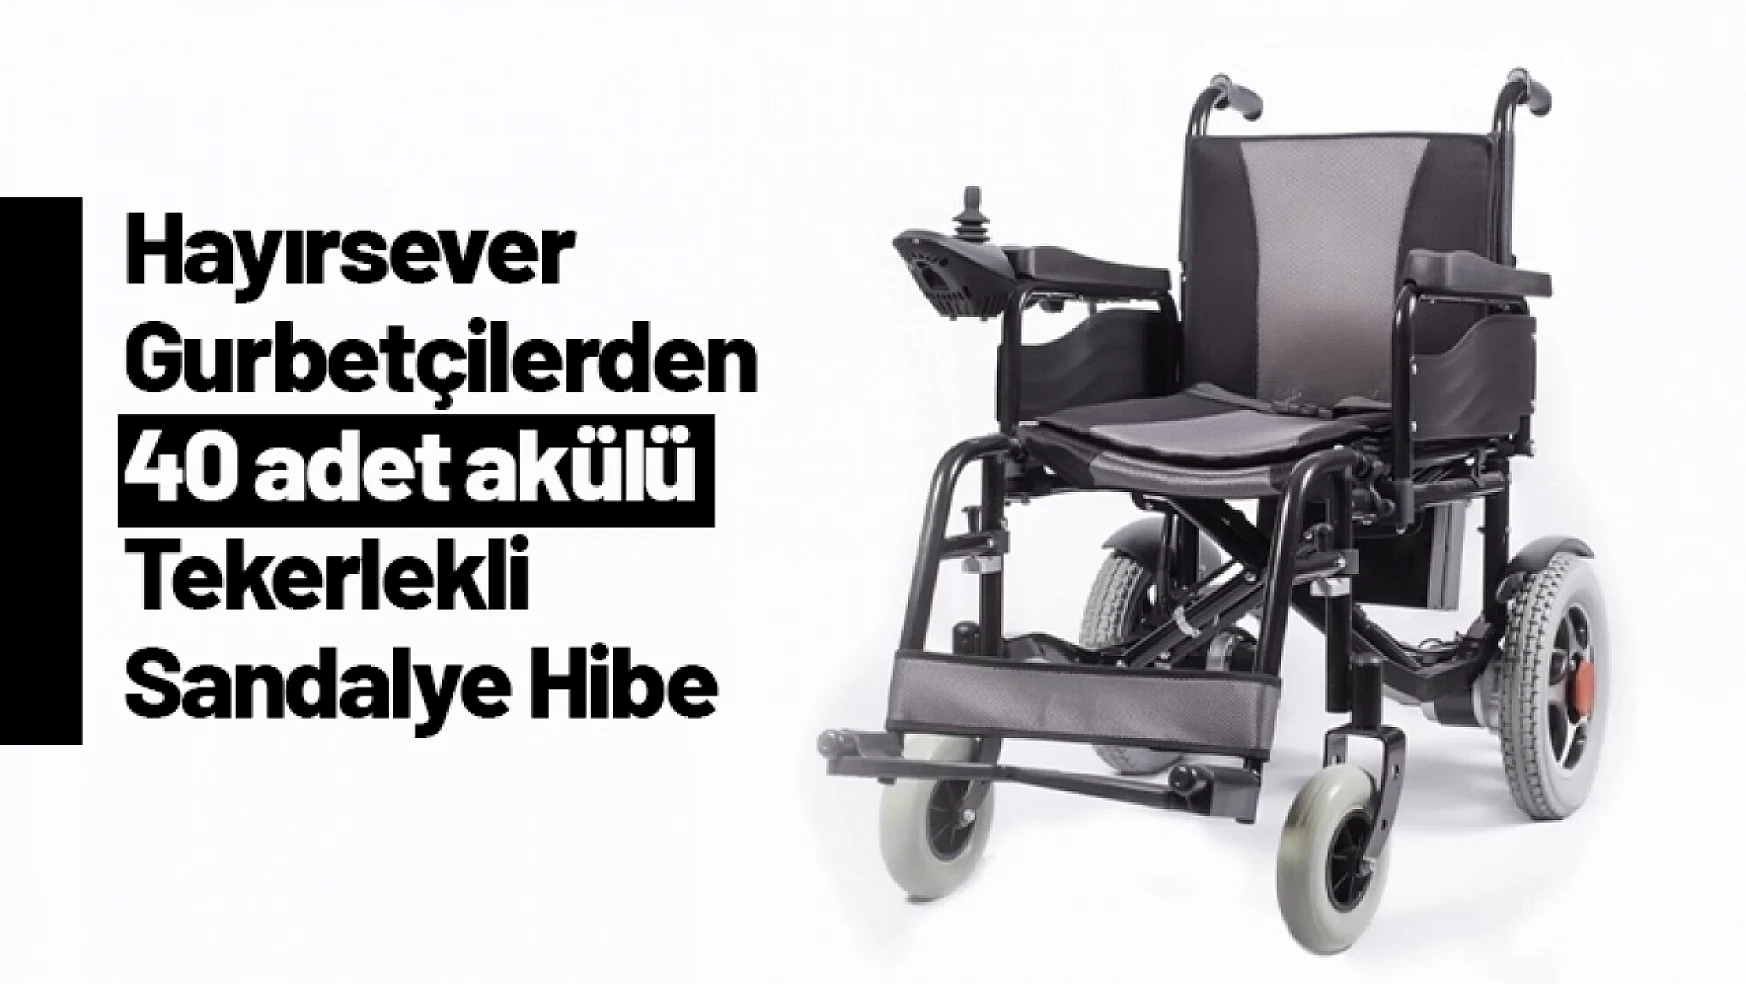 Almanya'dan Malatya'ya 40 Adet Akülü Tekerlekli Sandalye Hediye!